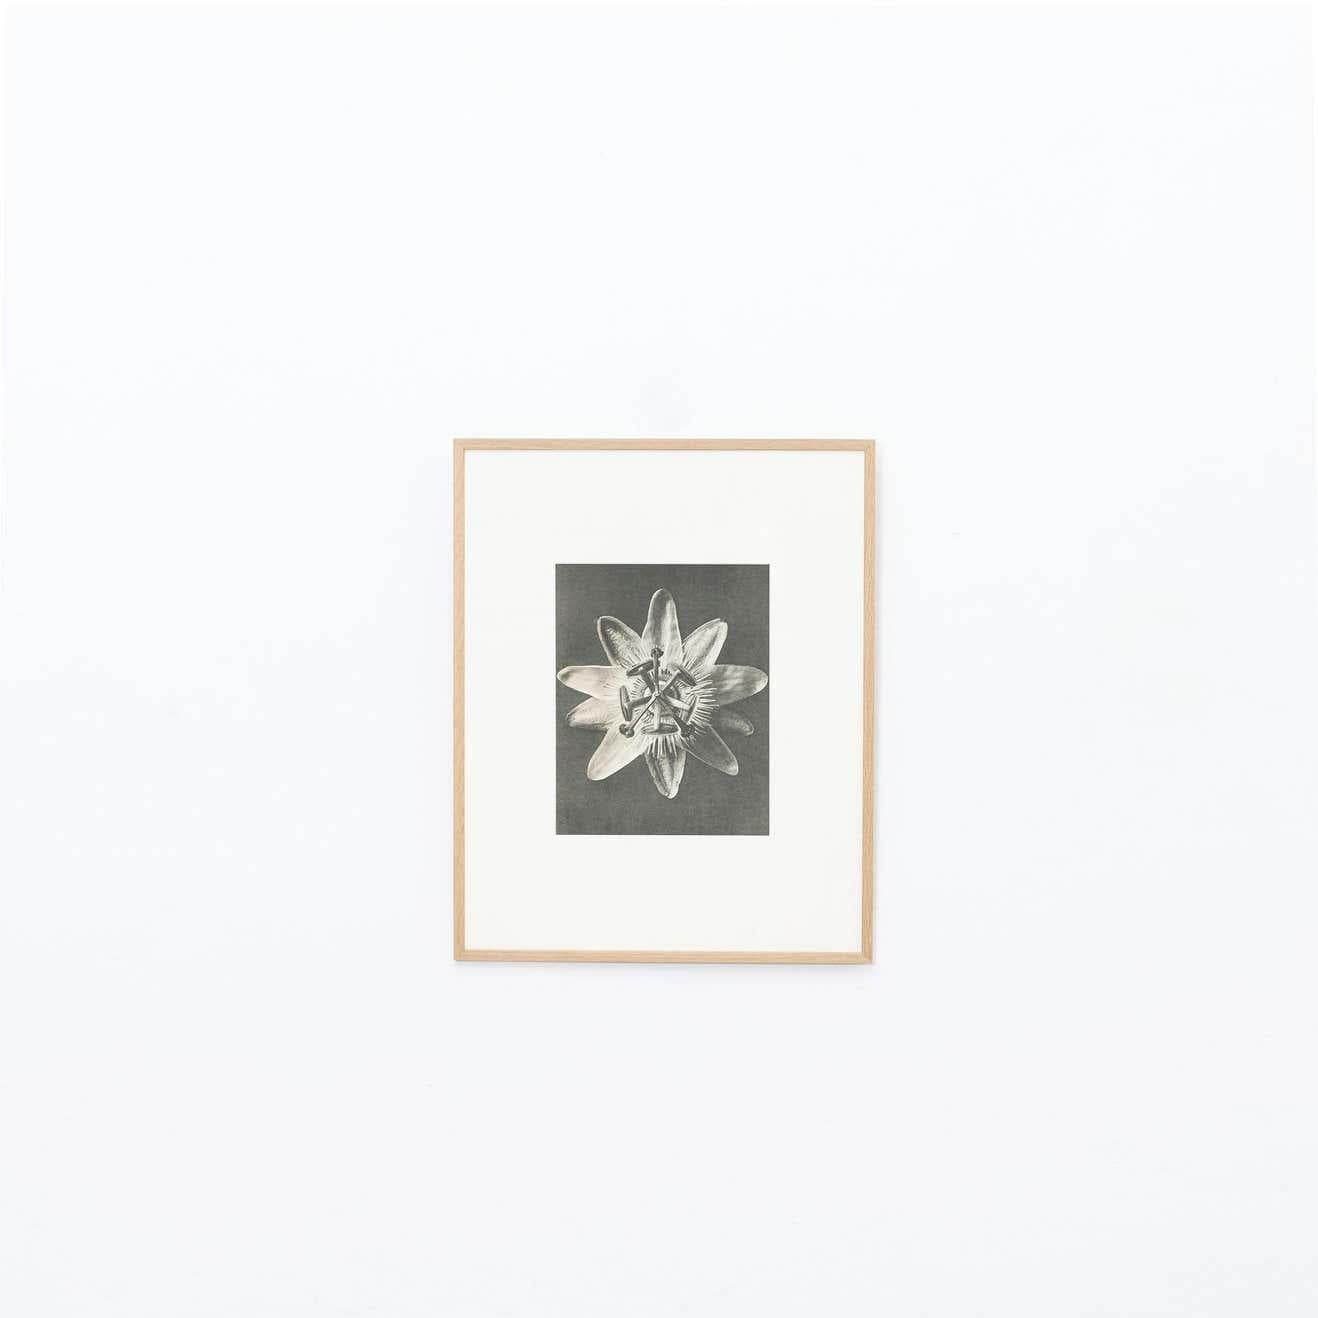 Karl Blossfeldt photogravure from the edition of the book 'Wunder in der Natur' in 1942.

Photography number 30. 'Chrysanthemum Leucanthemum. Gemeine Wucherblume, große Maßliebe, Marienblume. Blütenknospe in 16 facher Vergrößerung'.

In original